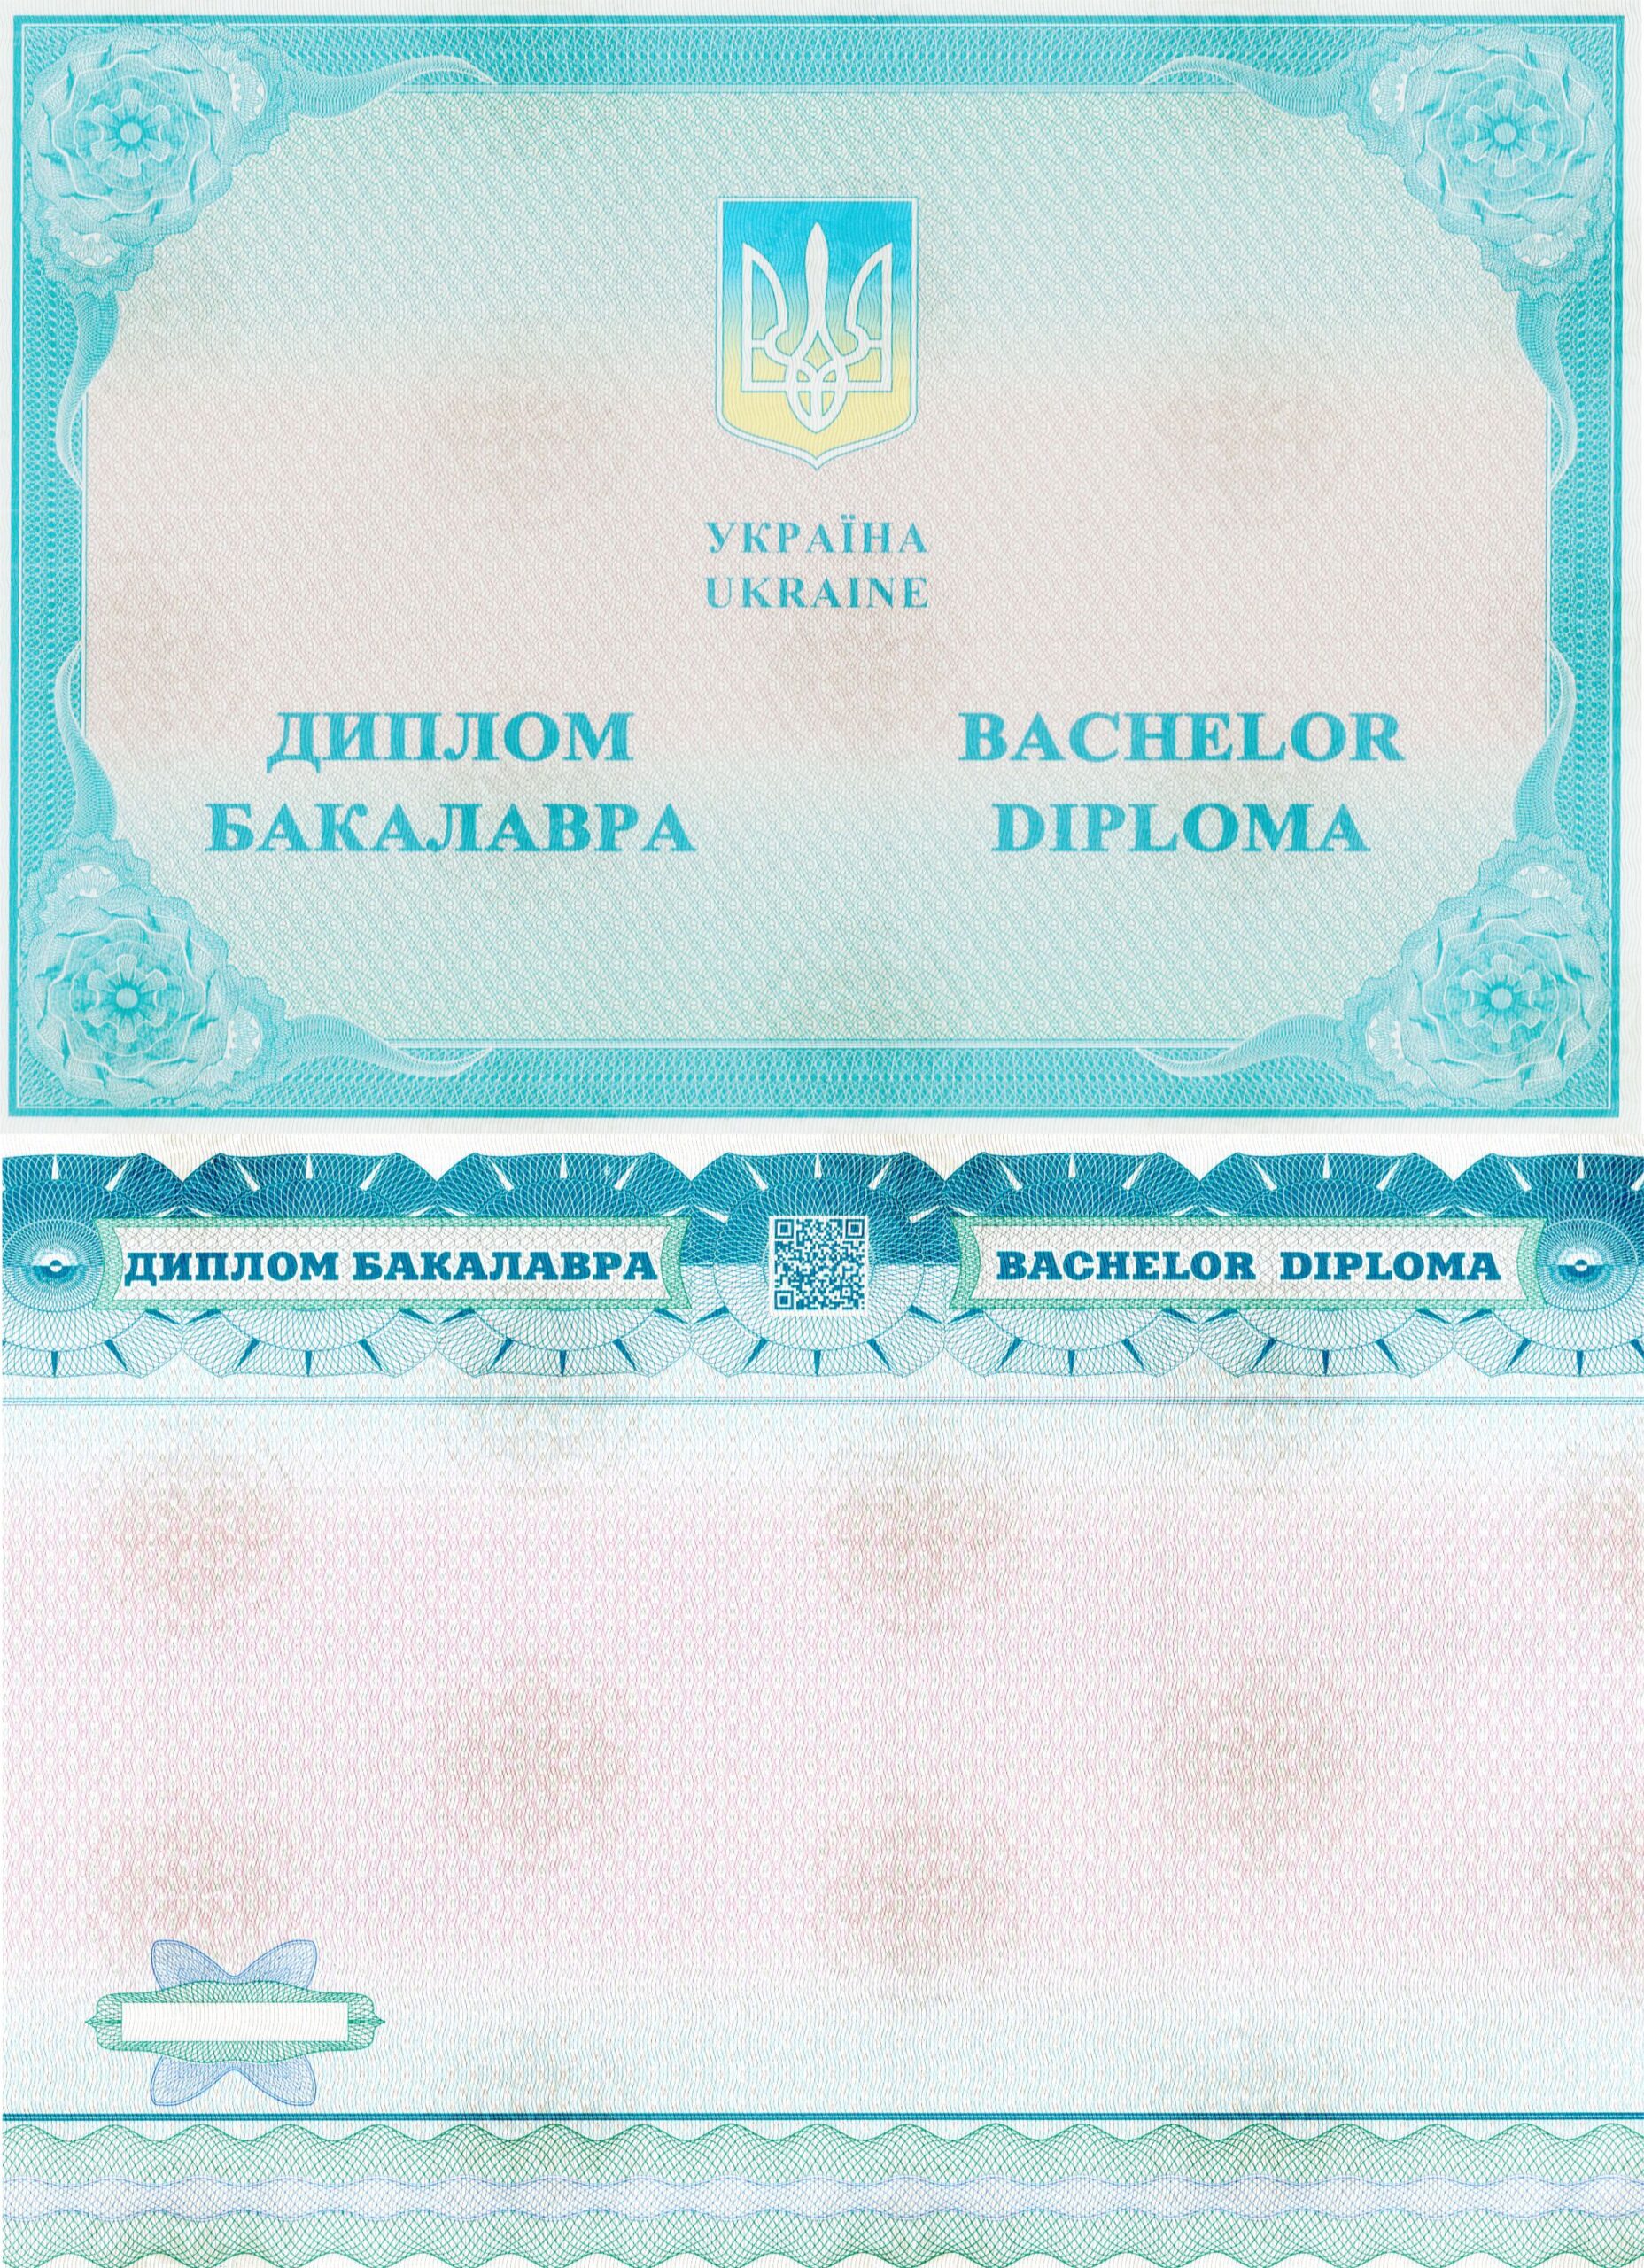 Диплом бакалавра любого ВУЗа Украины 2014 года выпуска.